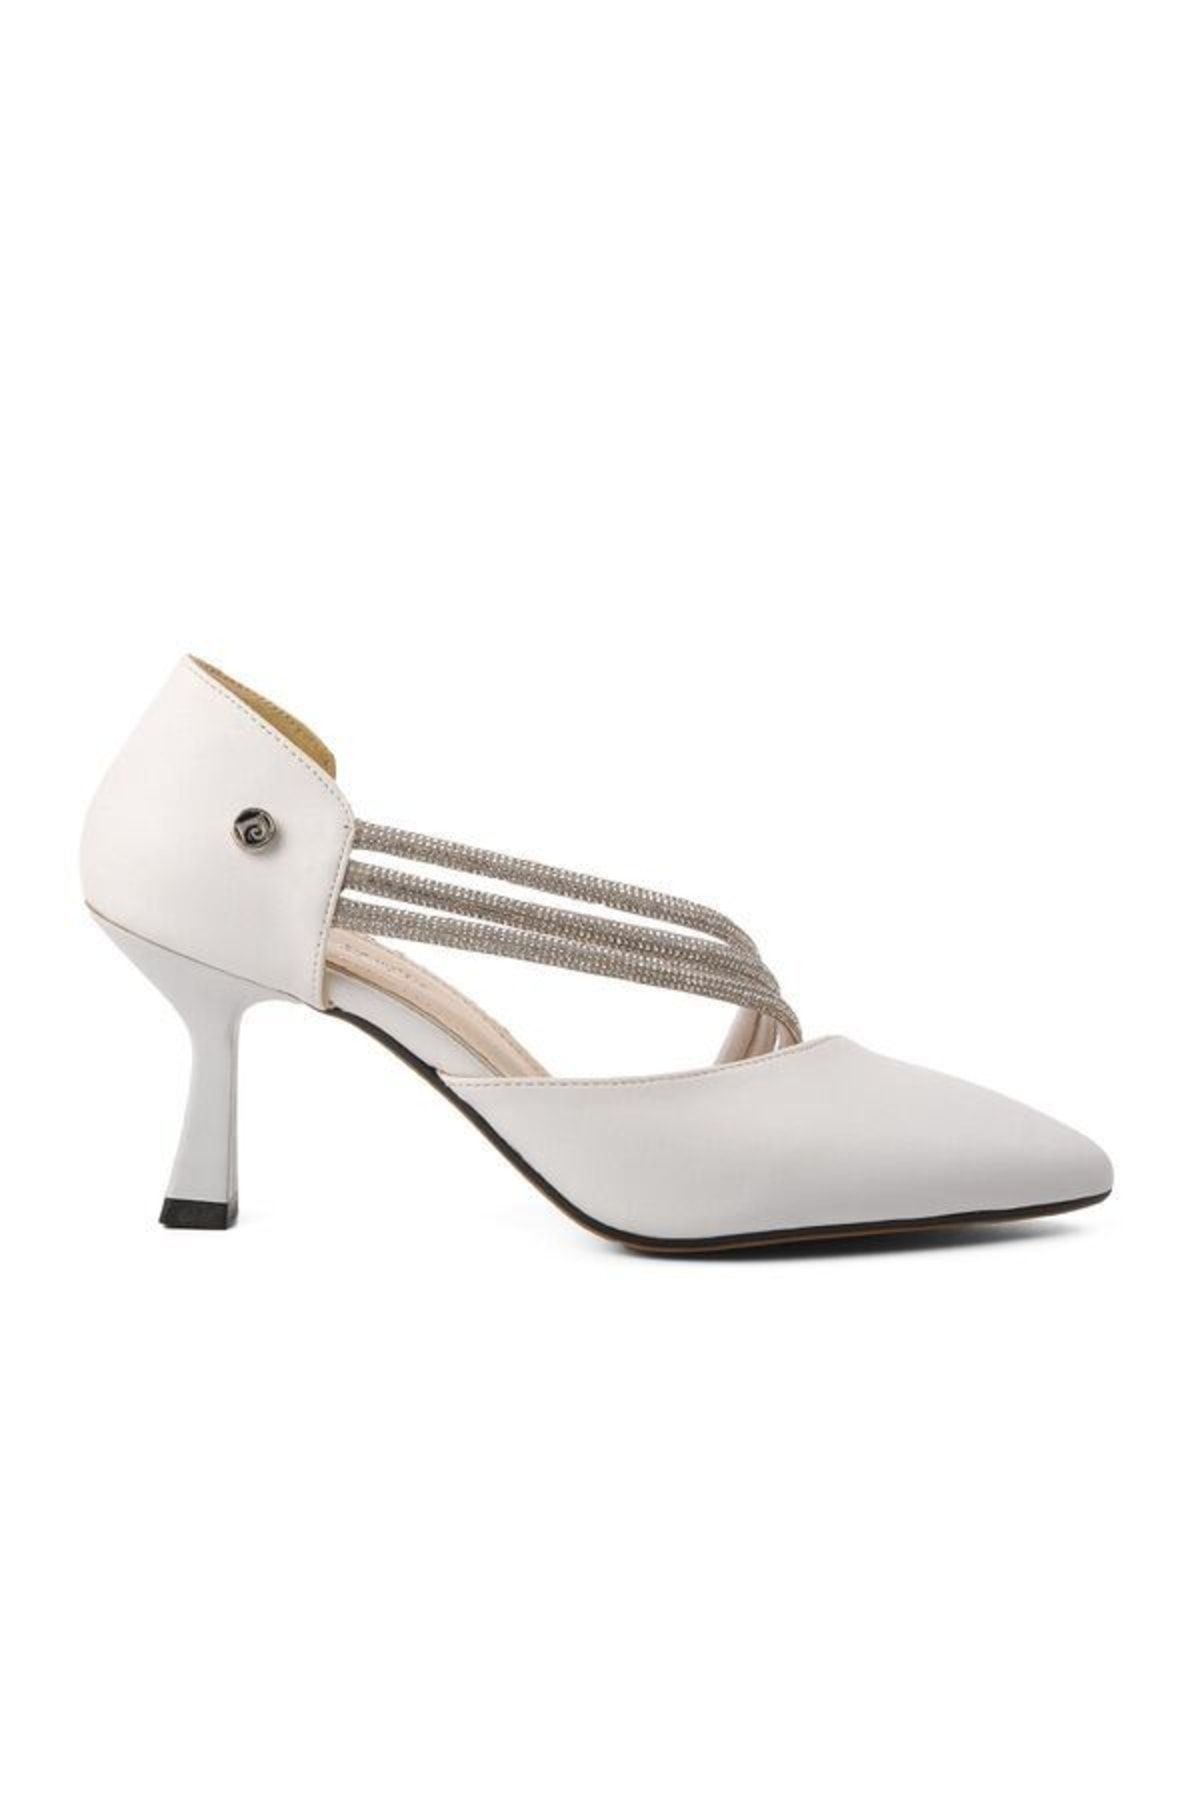 Pierre Cardin Pc-17771 Beyaz Cilt Kadın Abiye Ayakkabı